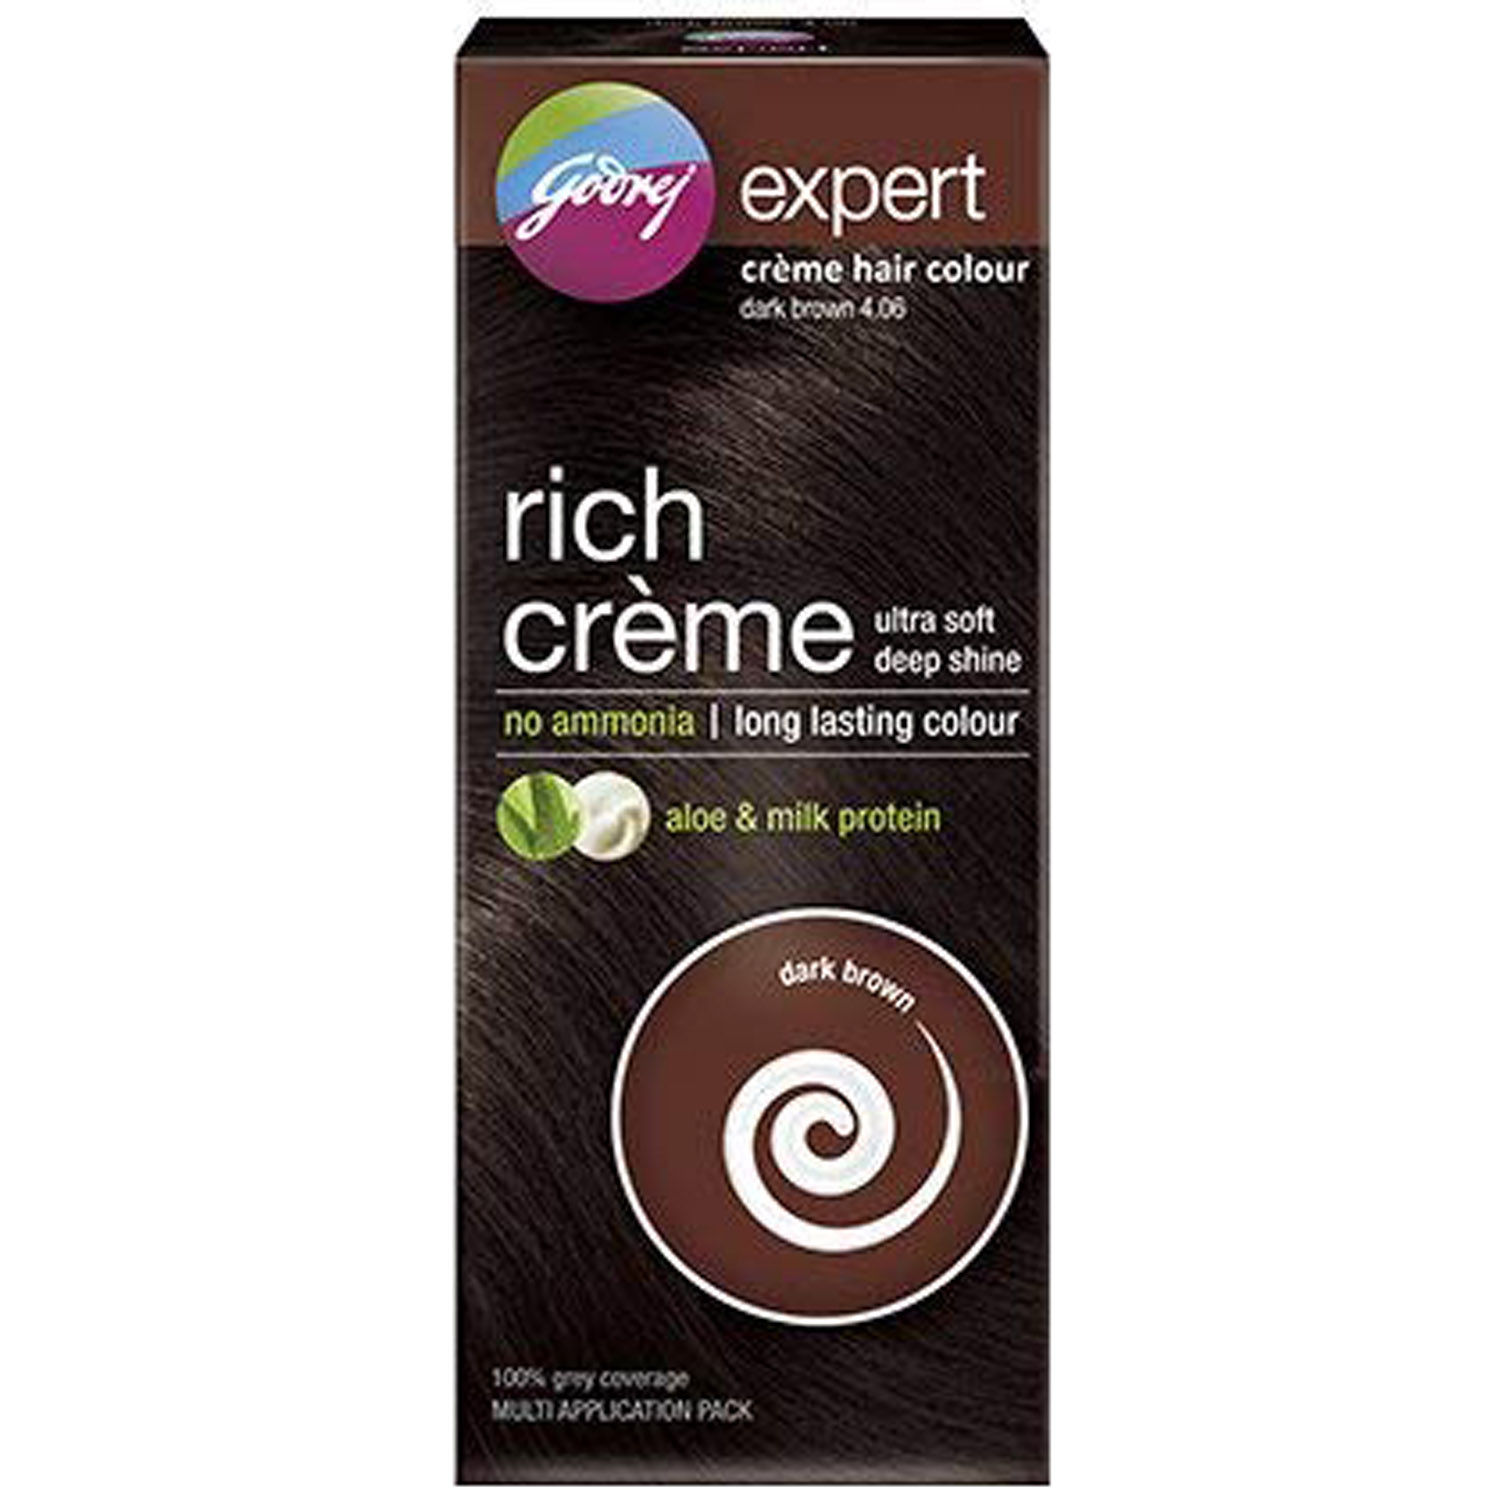 Buy Godrej Expert Rich Cr?e Hair Colour, Dark Brown 50 gm Online